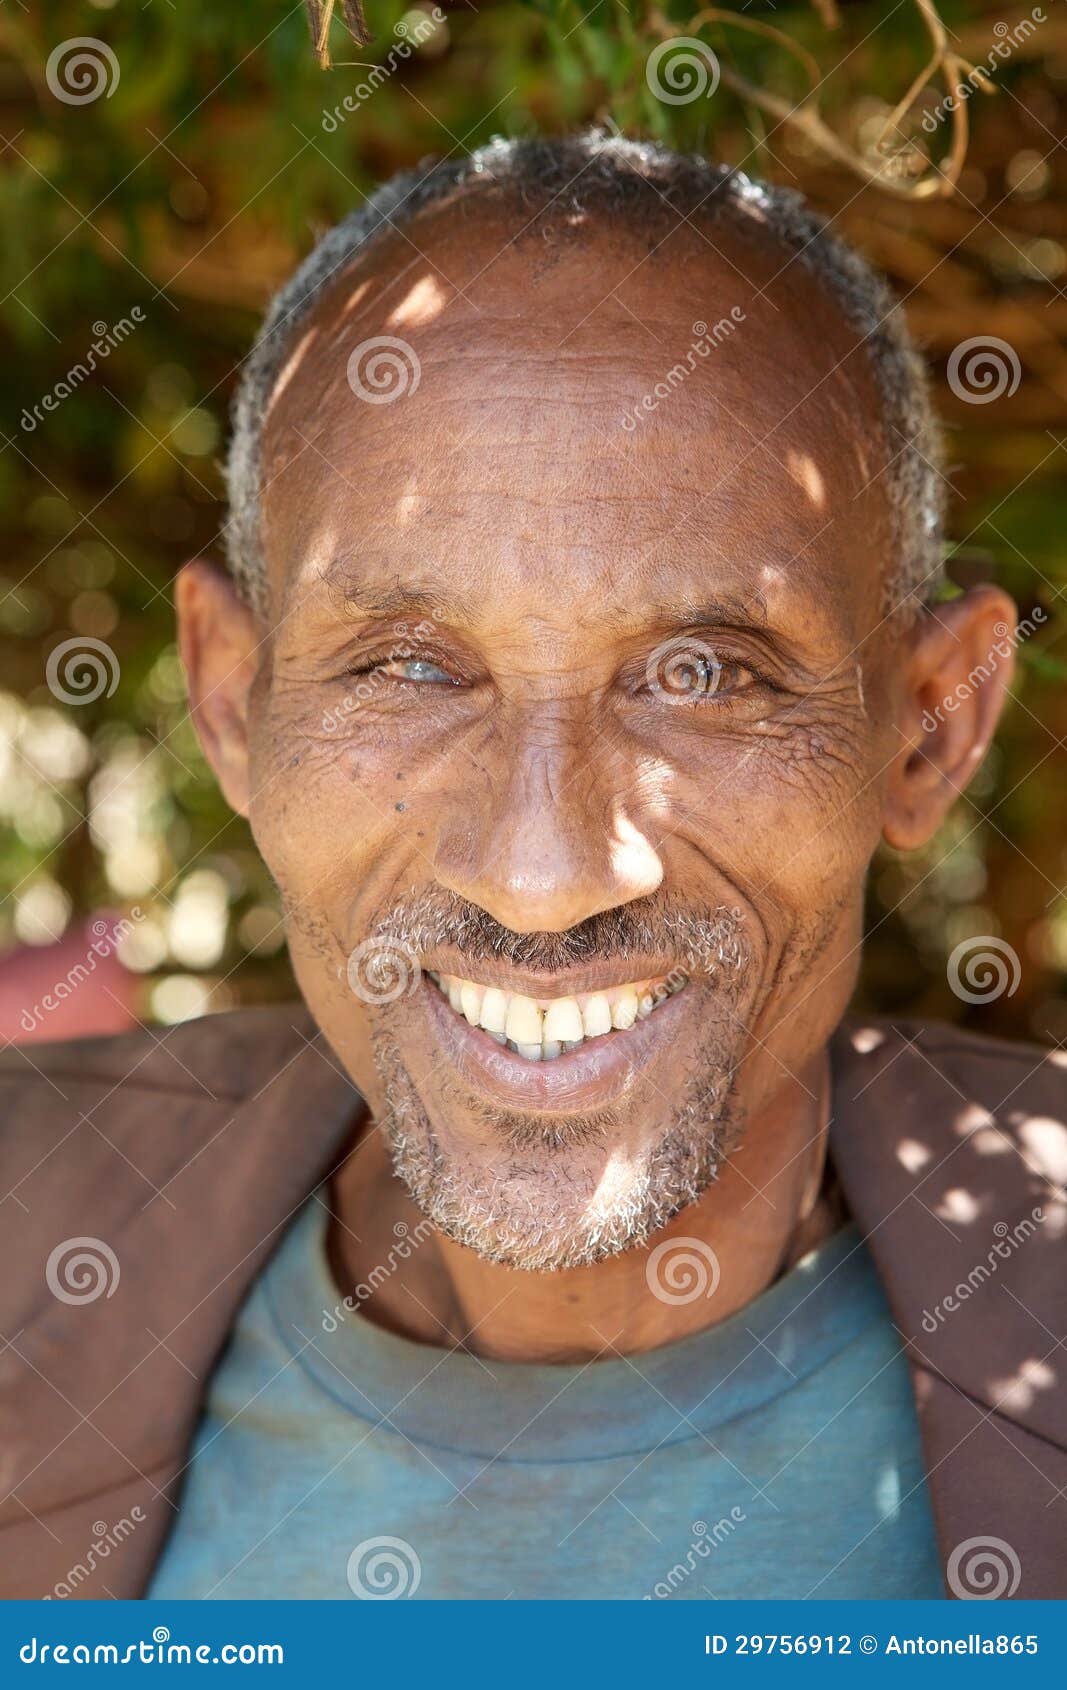 sidama-man-portrait-sidama-sidamo-ethnic-group-living-southern-ethiopia-29756912.jpg